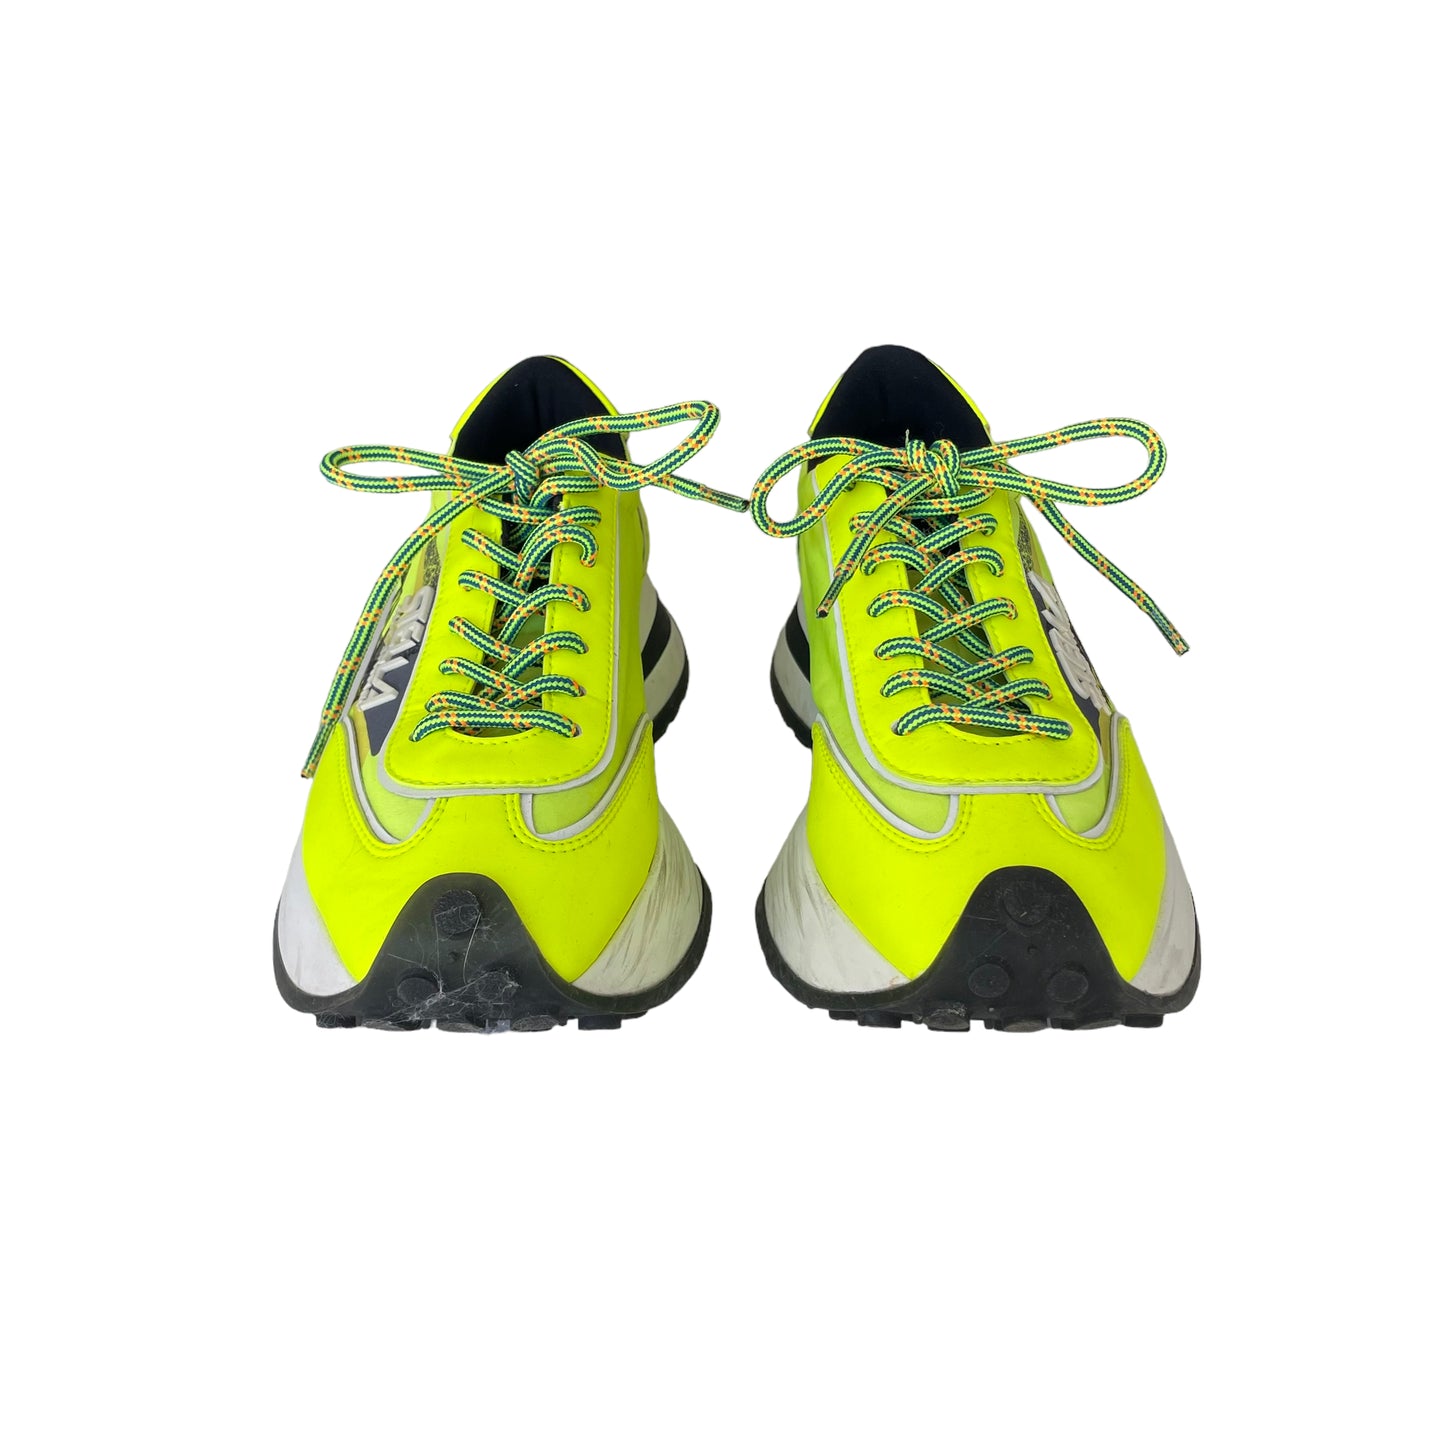 Neon Yellow Running Shoes - 8